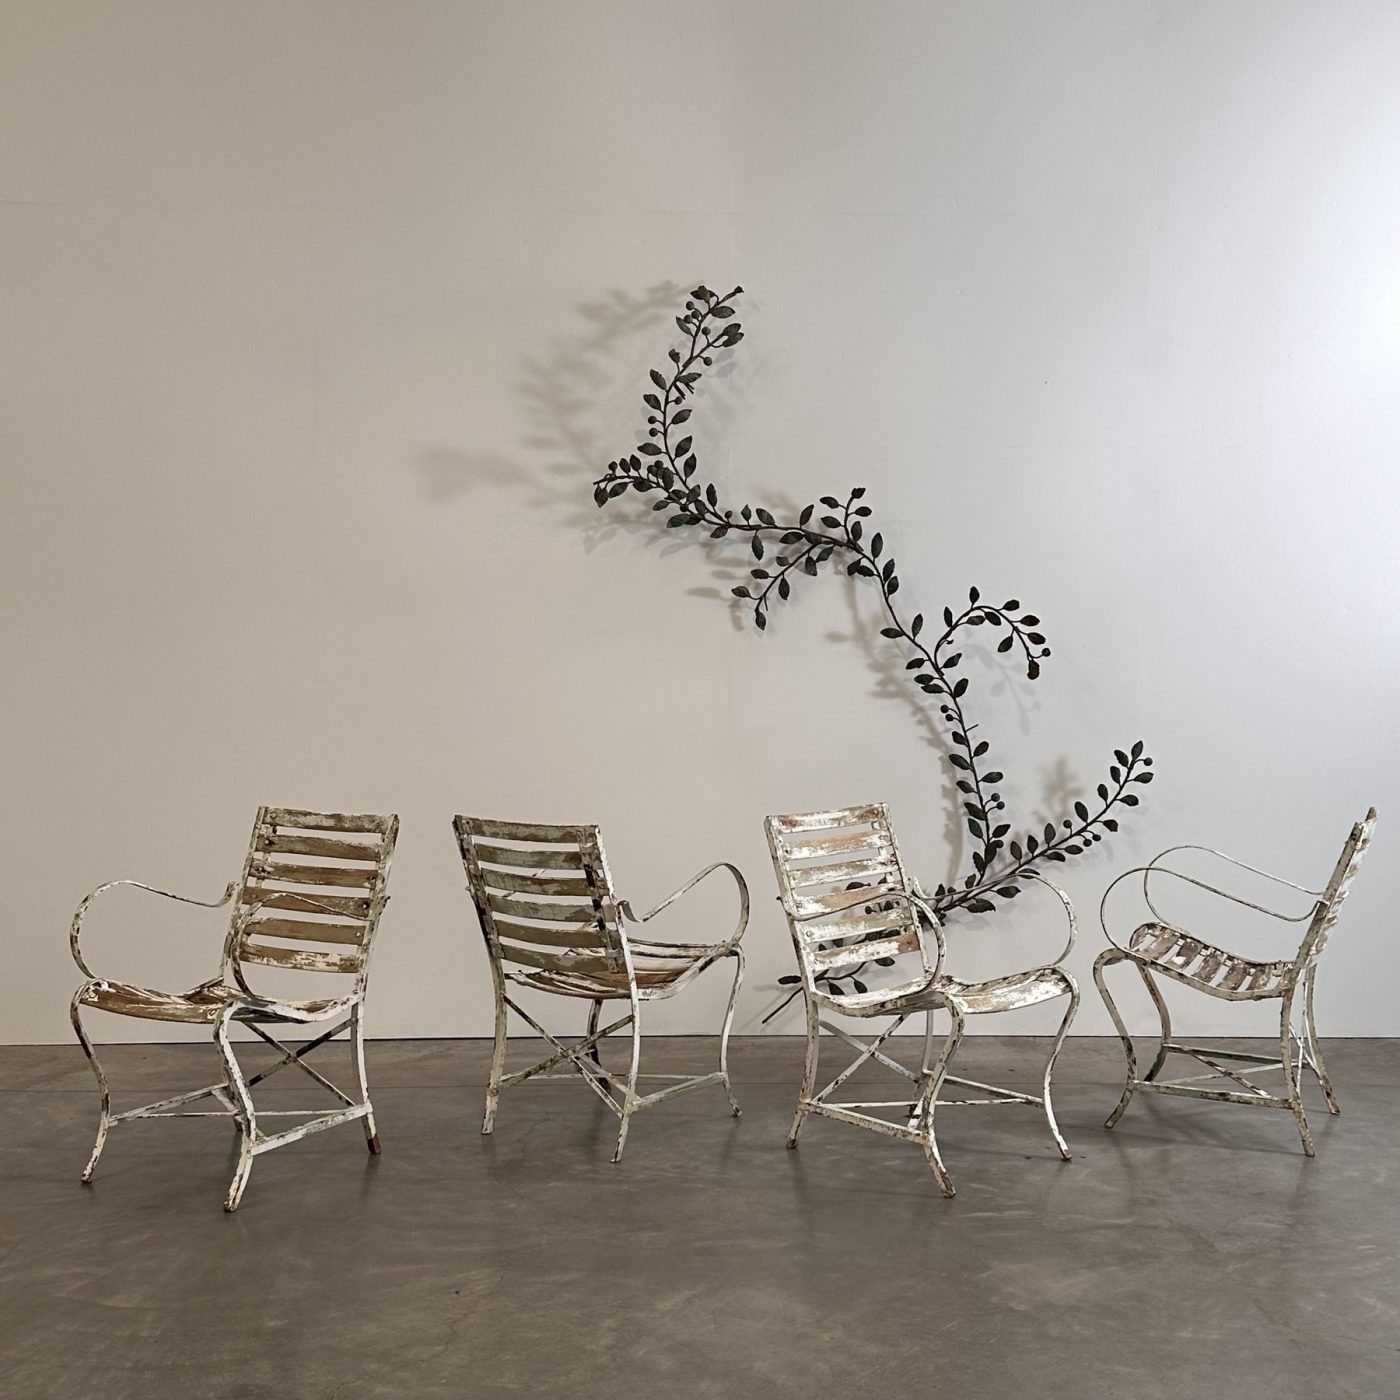 objet-vagabond-garden-chairs0002